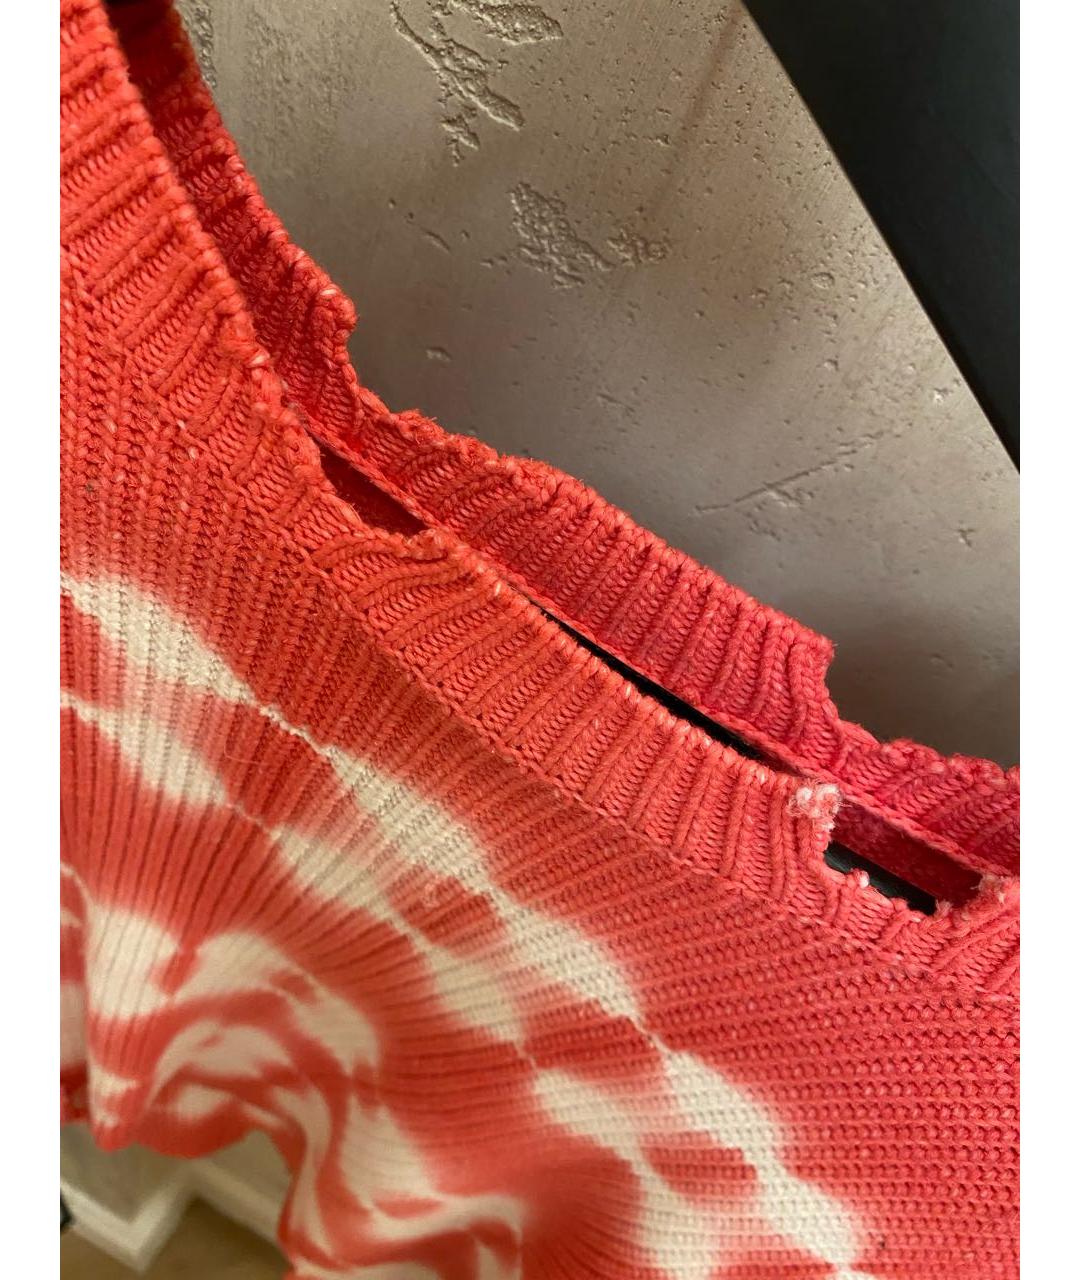 DIESEL Розовый хлопковый джемпер / свитер, фото 2